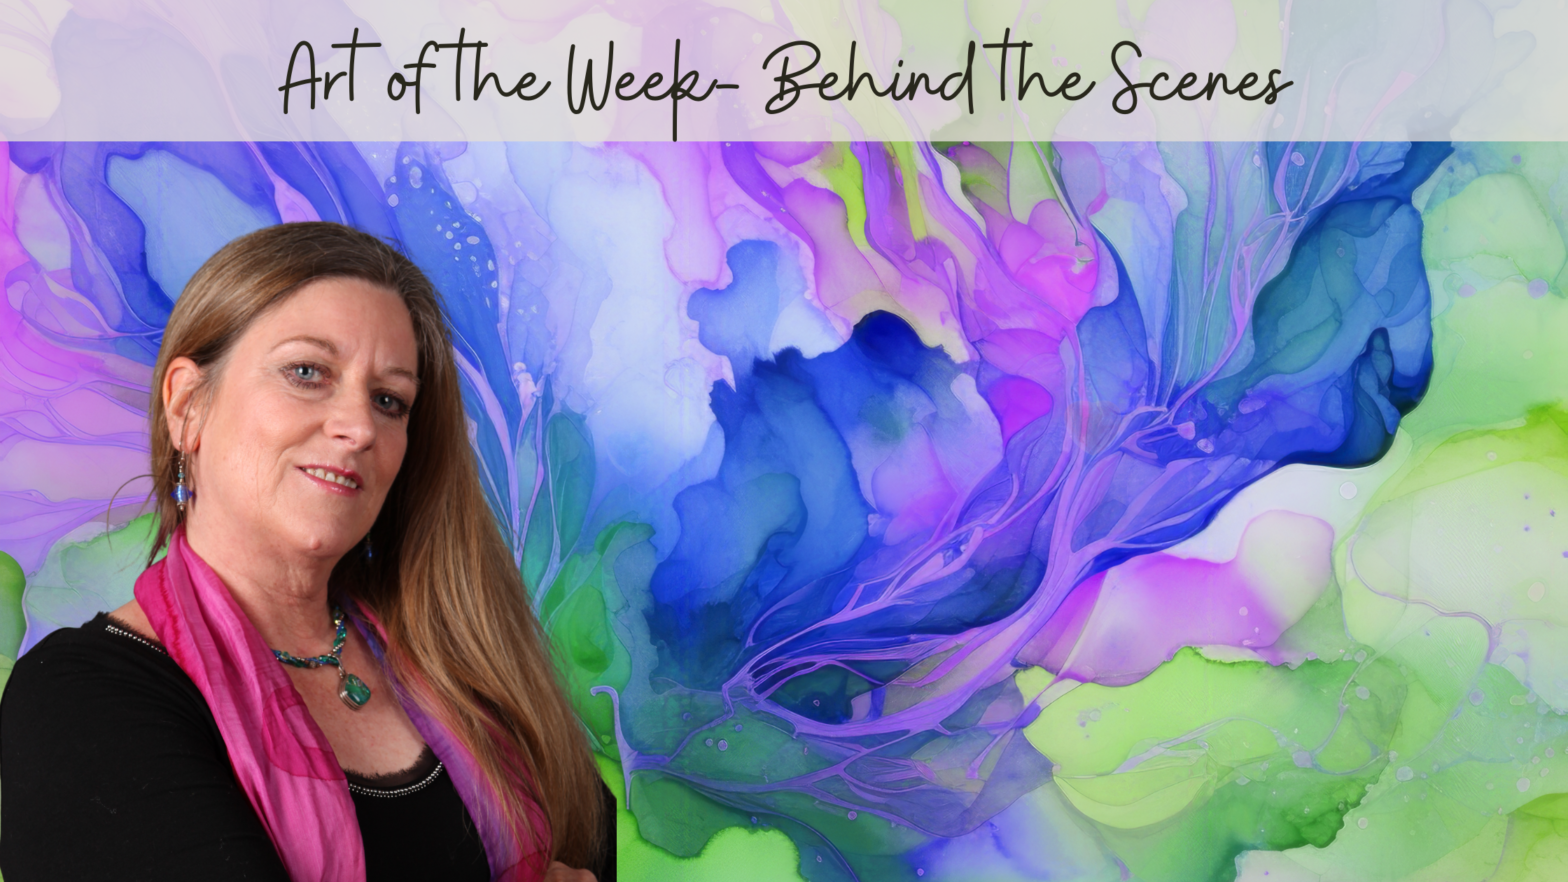 Art of the Week- Behind the Scenes: "Transforming"